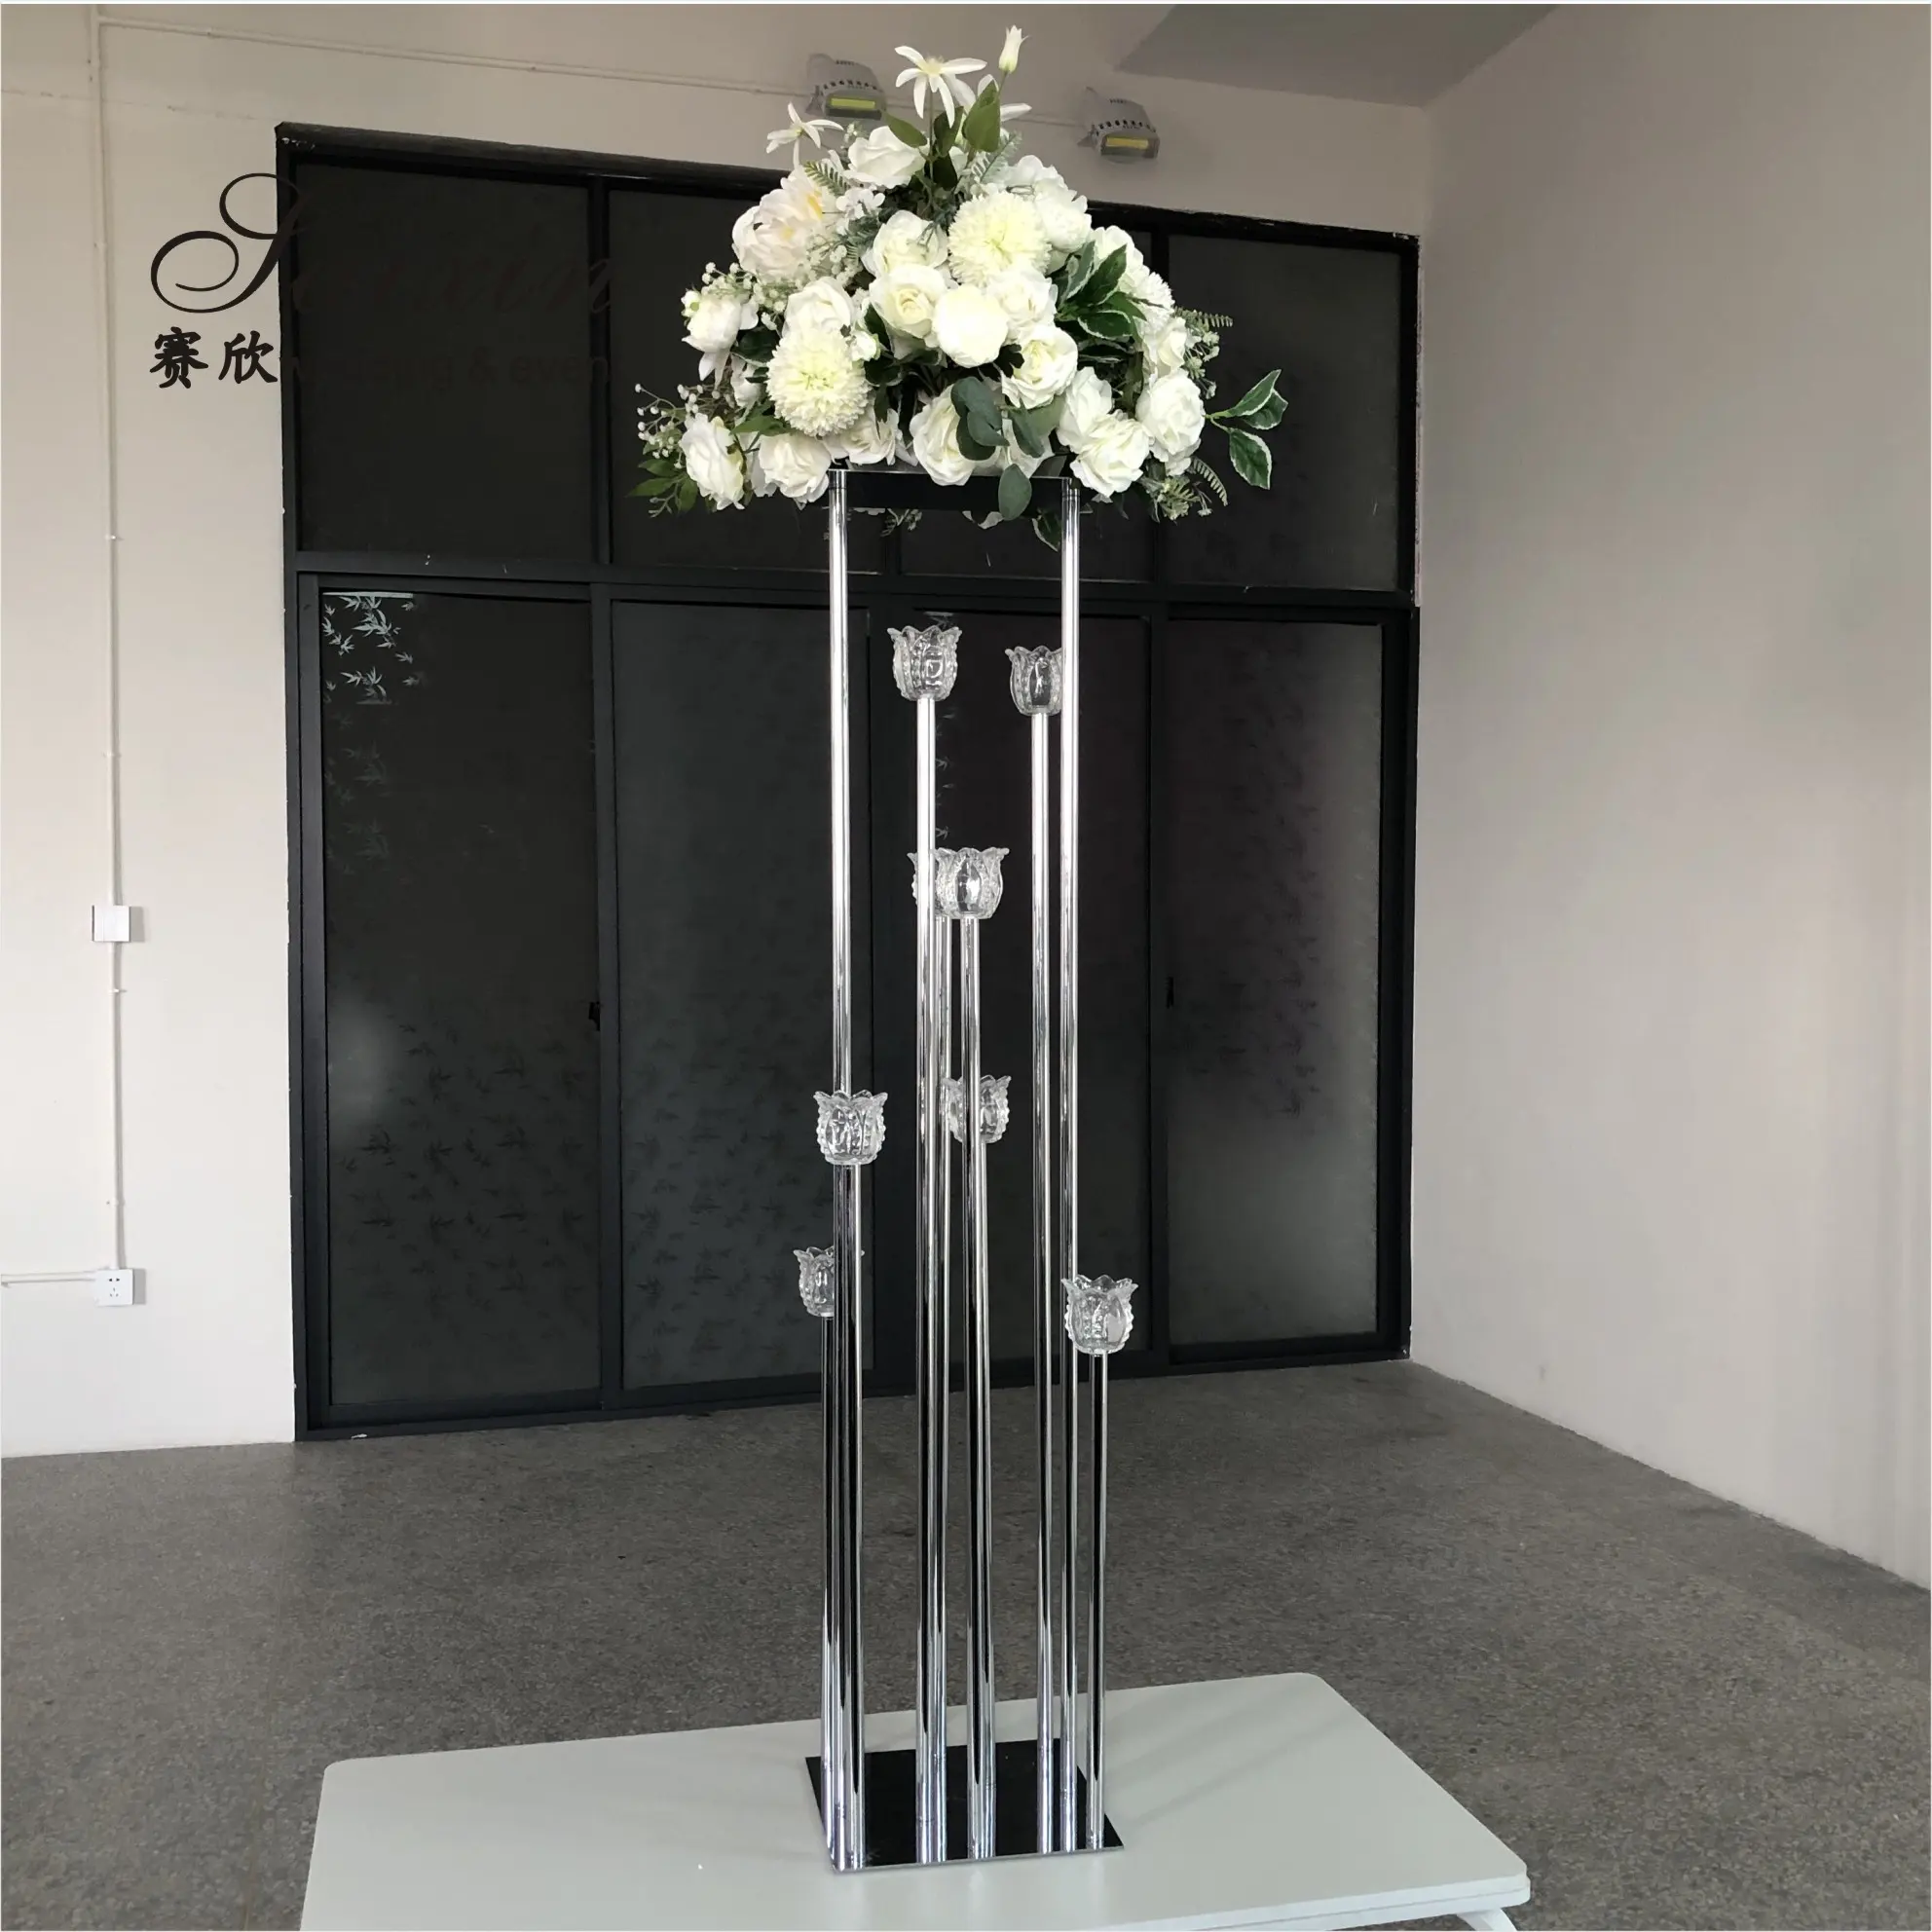 गर्म बिक्री शादी की सजावट उद्यानपथ खंभे फूल 10 मोमबत्ती धारक के साथ खड़ा है